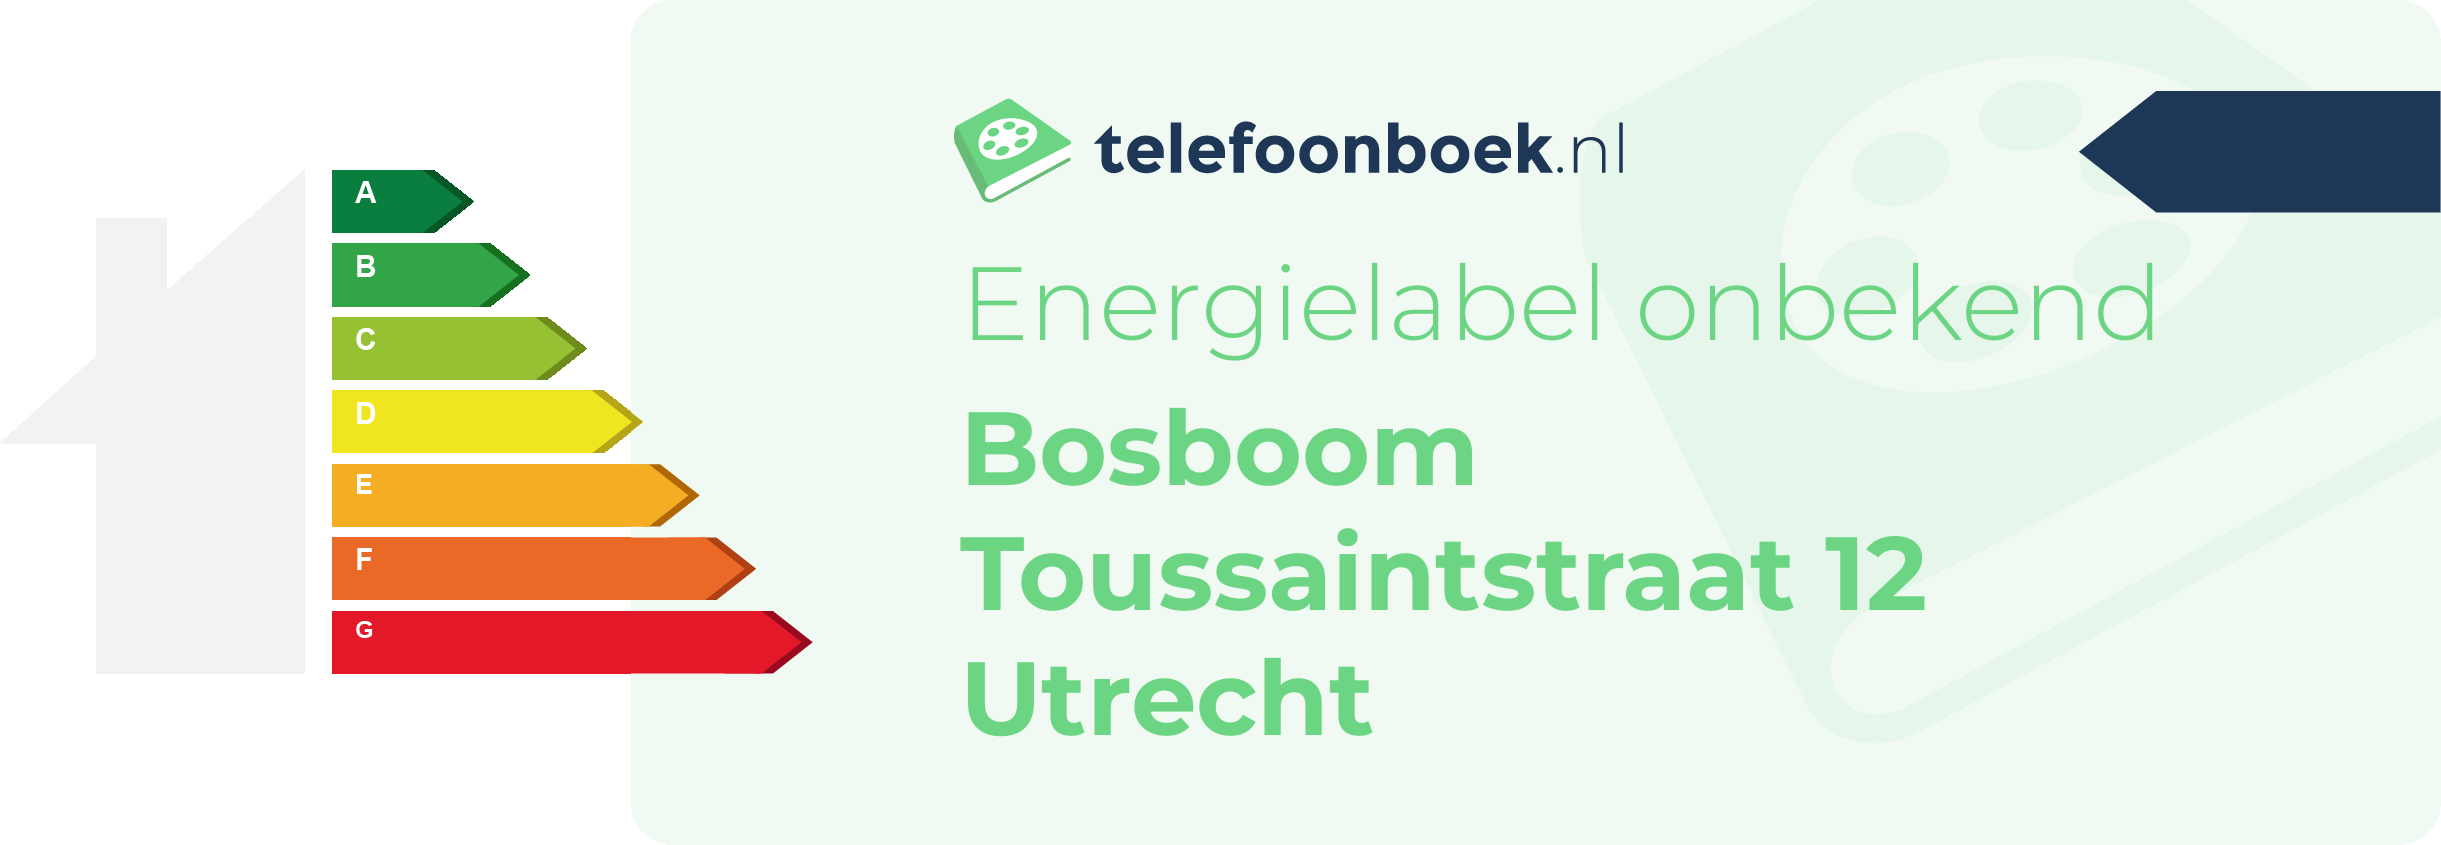 Energielabel Bosboom Toussaintstraat 12 Utrecht